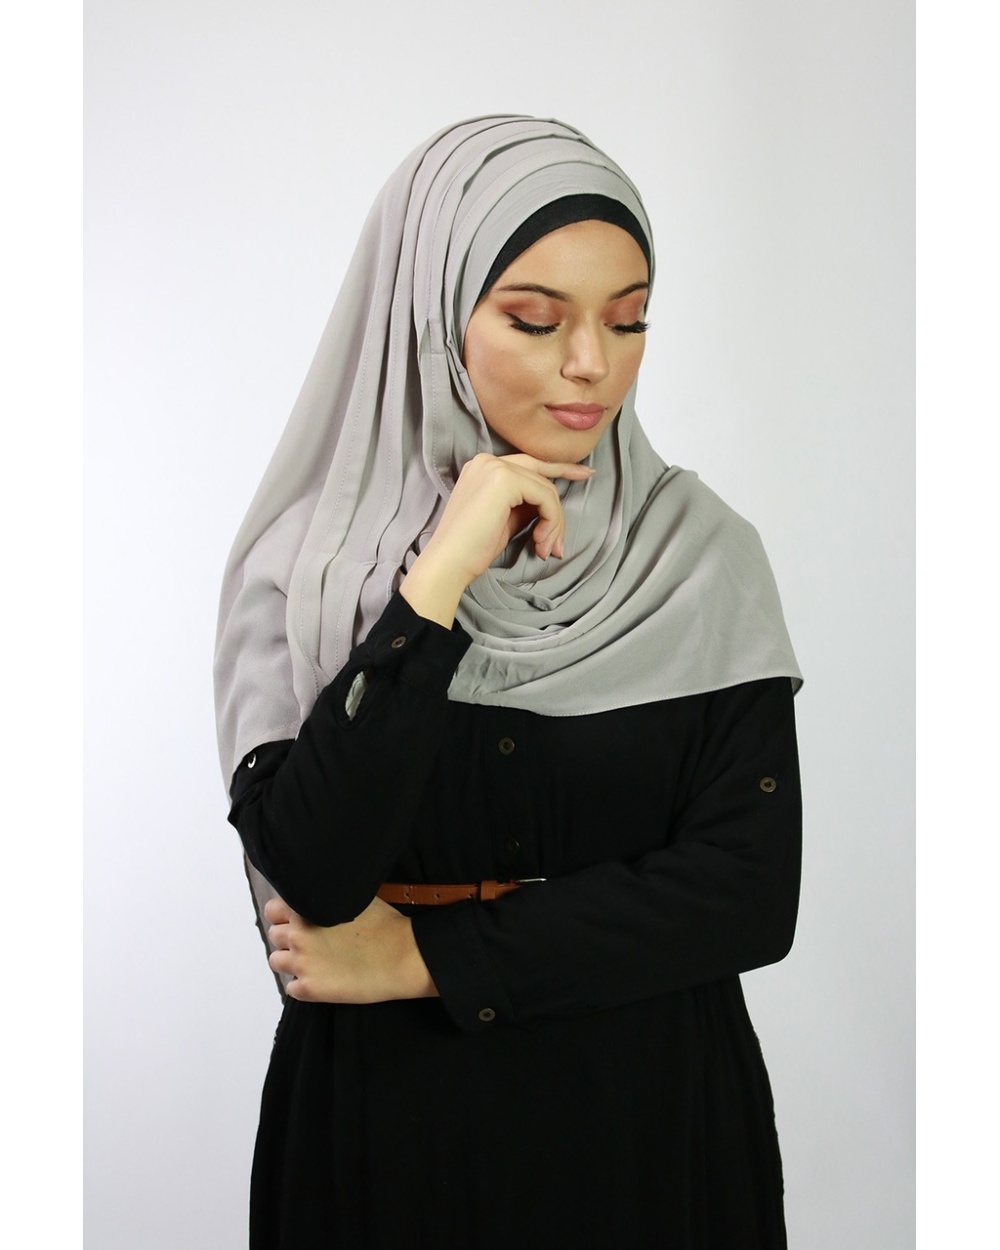 Hijab à enfiler entiérement cousu gris clair